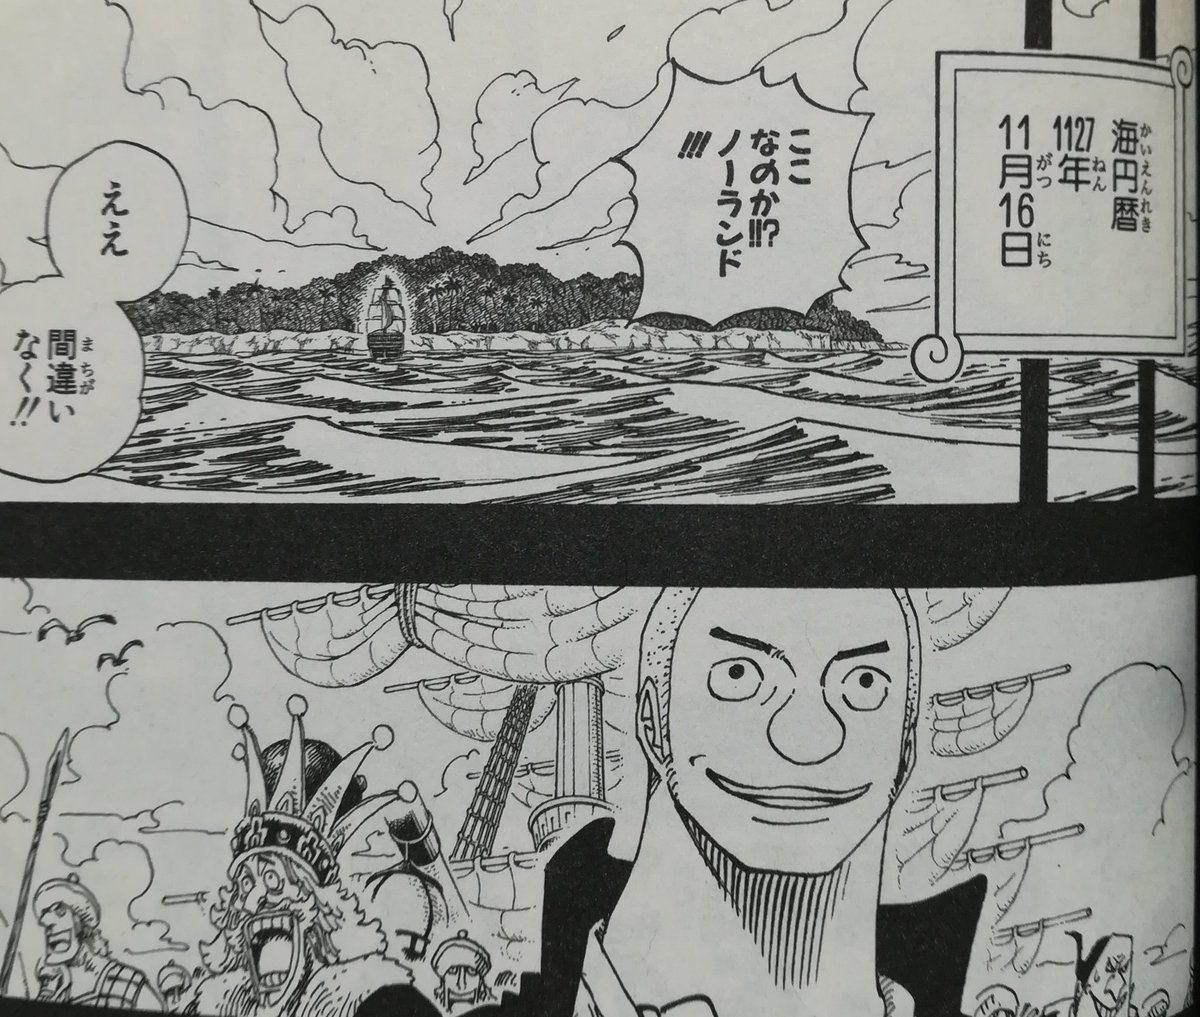 One Pieceが大好きな神木 スーパーカミキカンデ V Tvittere 海円暦なのでアレなんですけど 明後日11月16日はノーランドがルブニール王国の国王たちを連れてジャヤに着いた日でござます